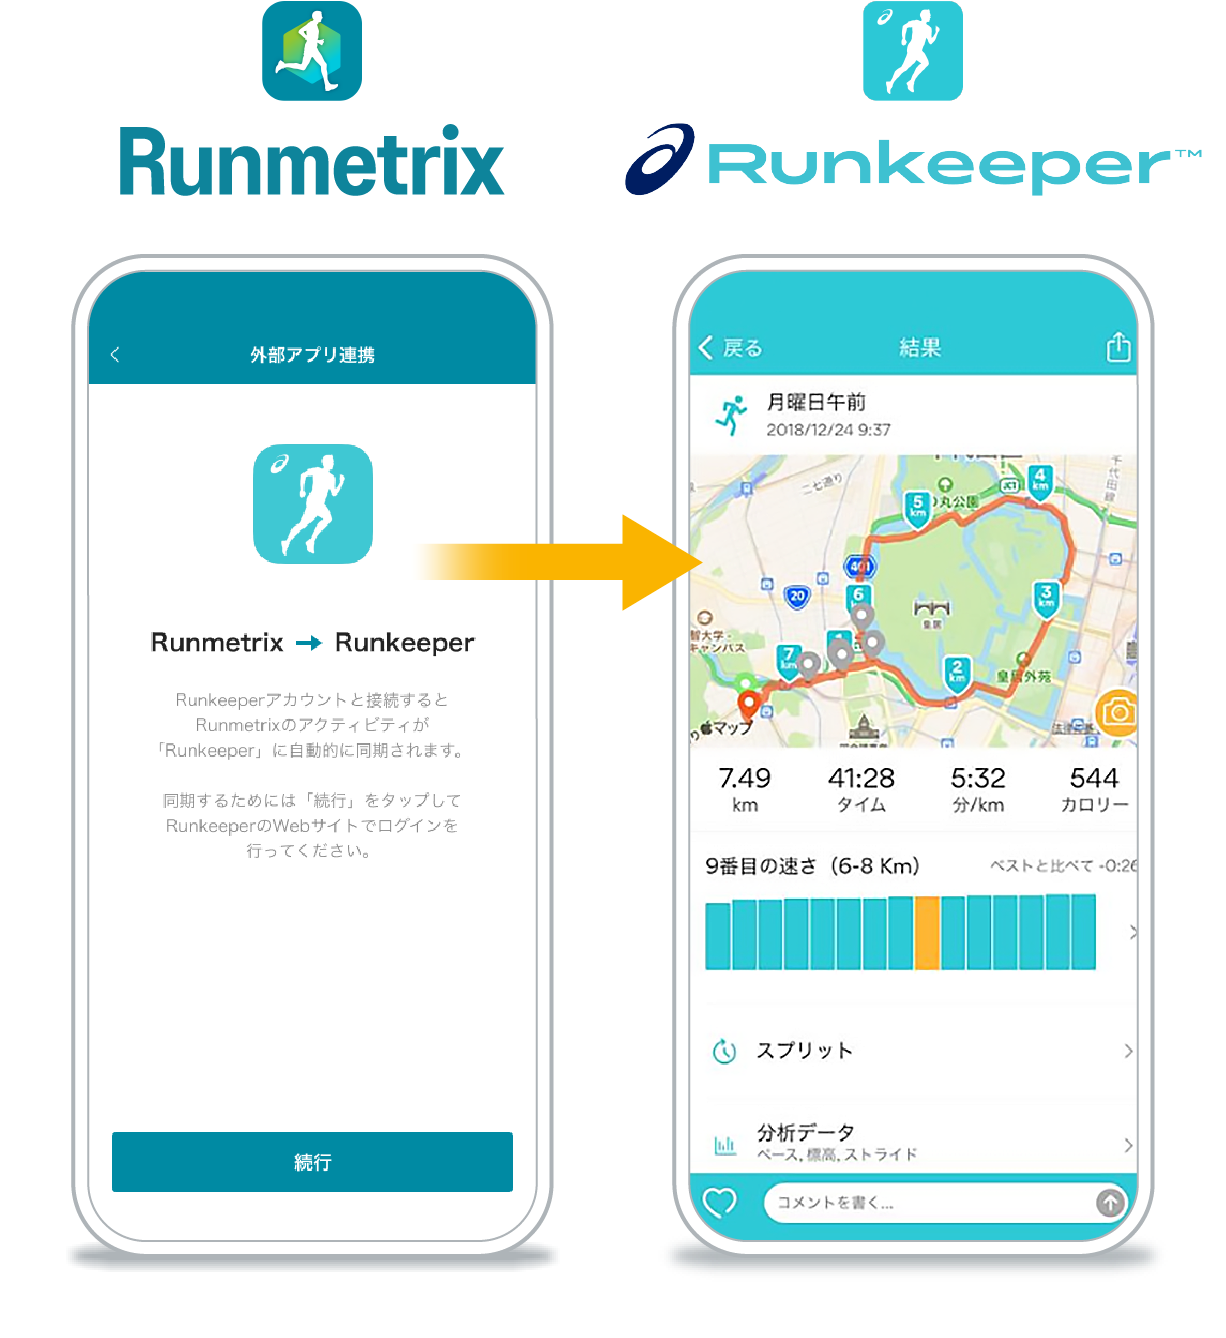 Runmetrix → Runkeeper